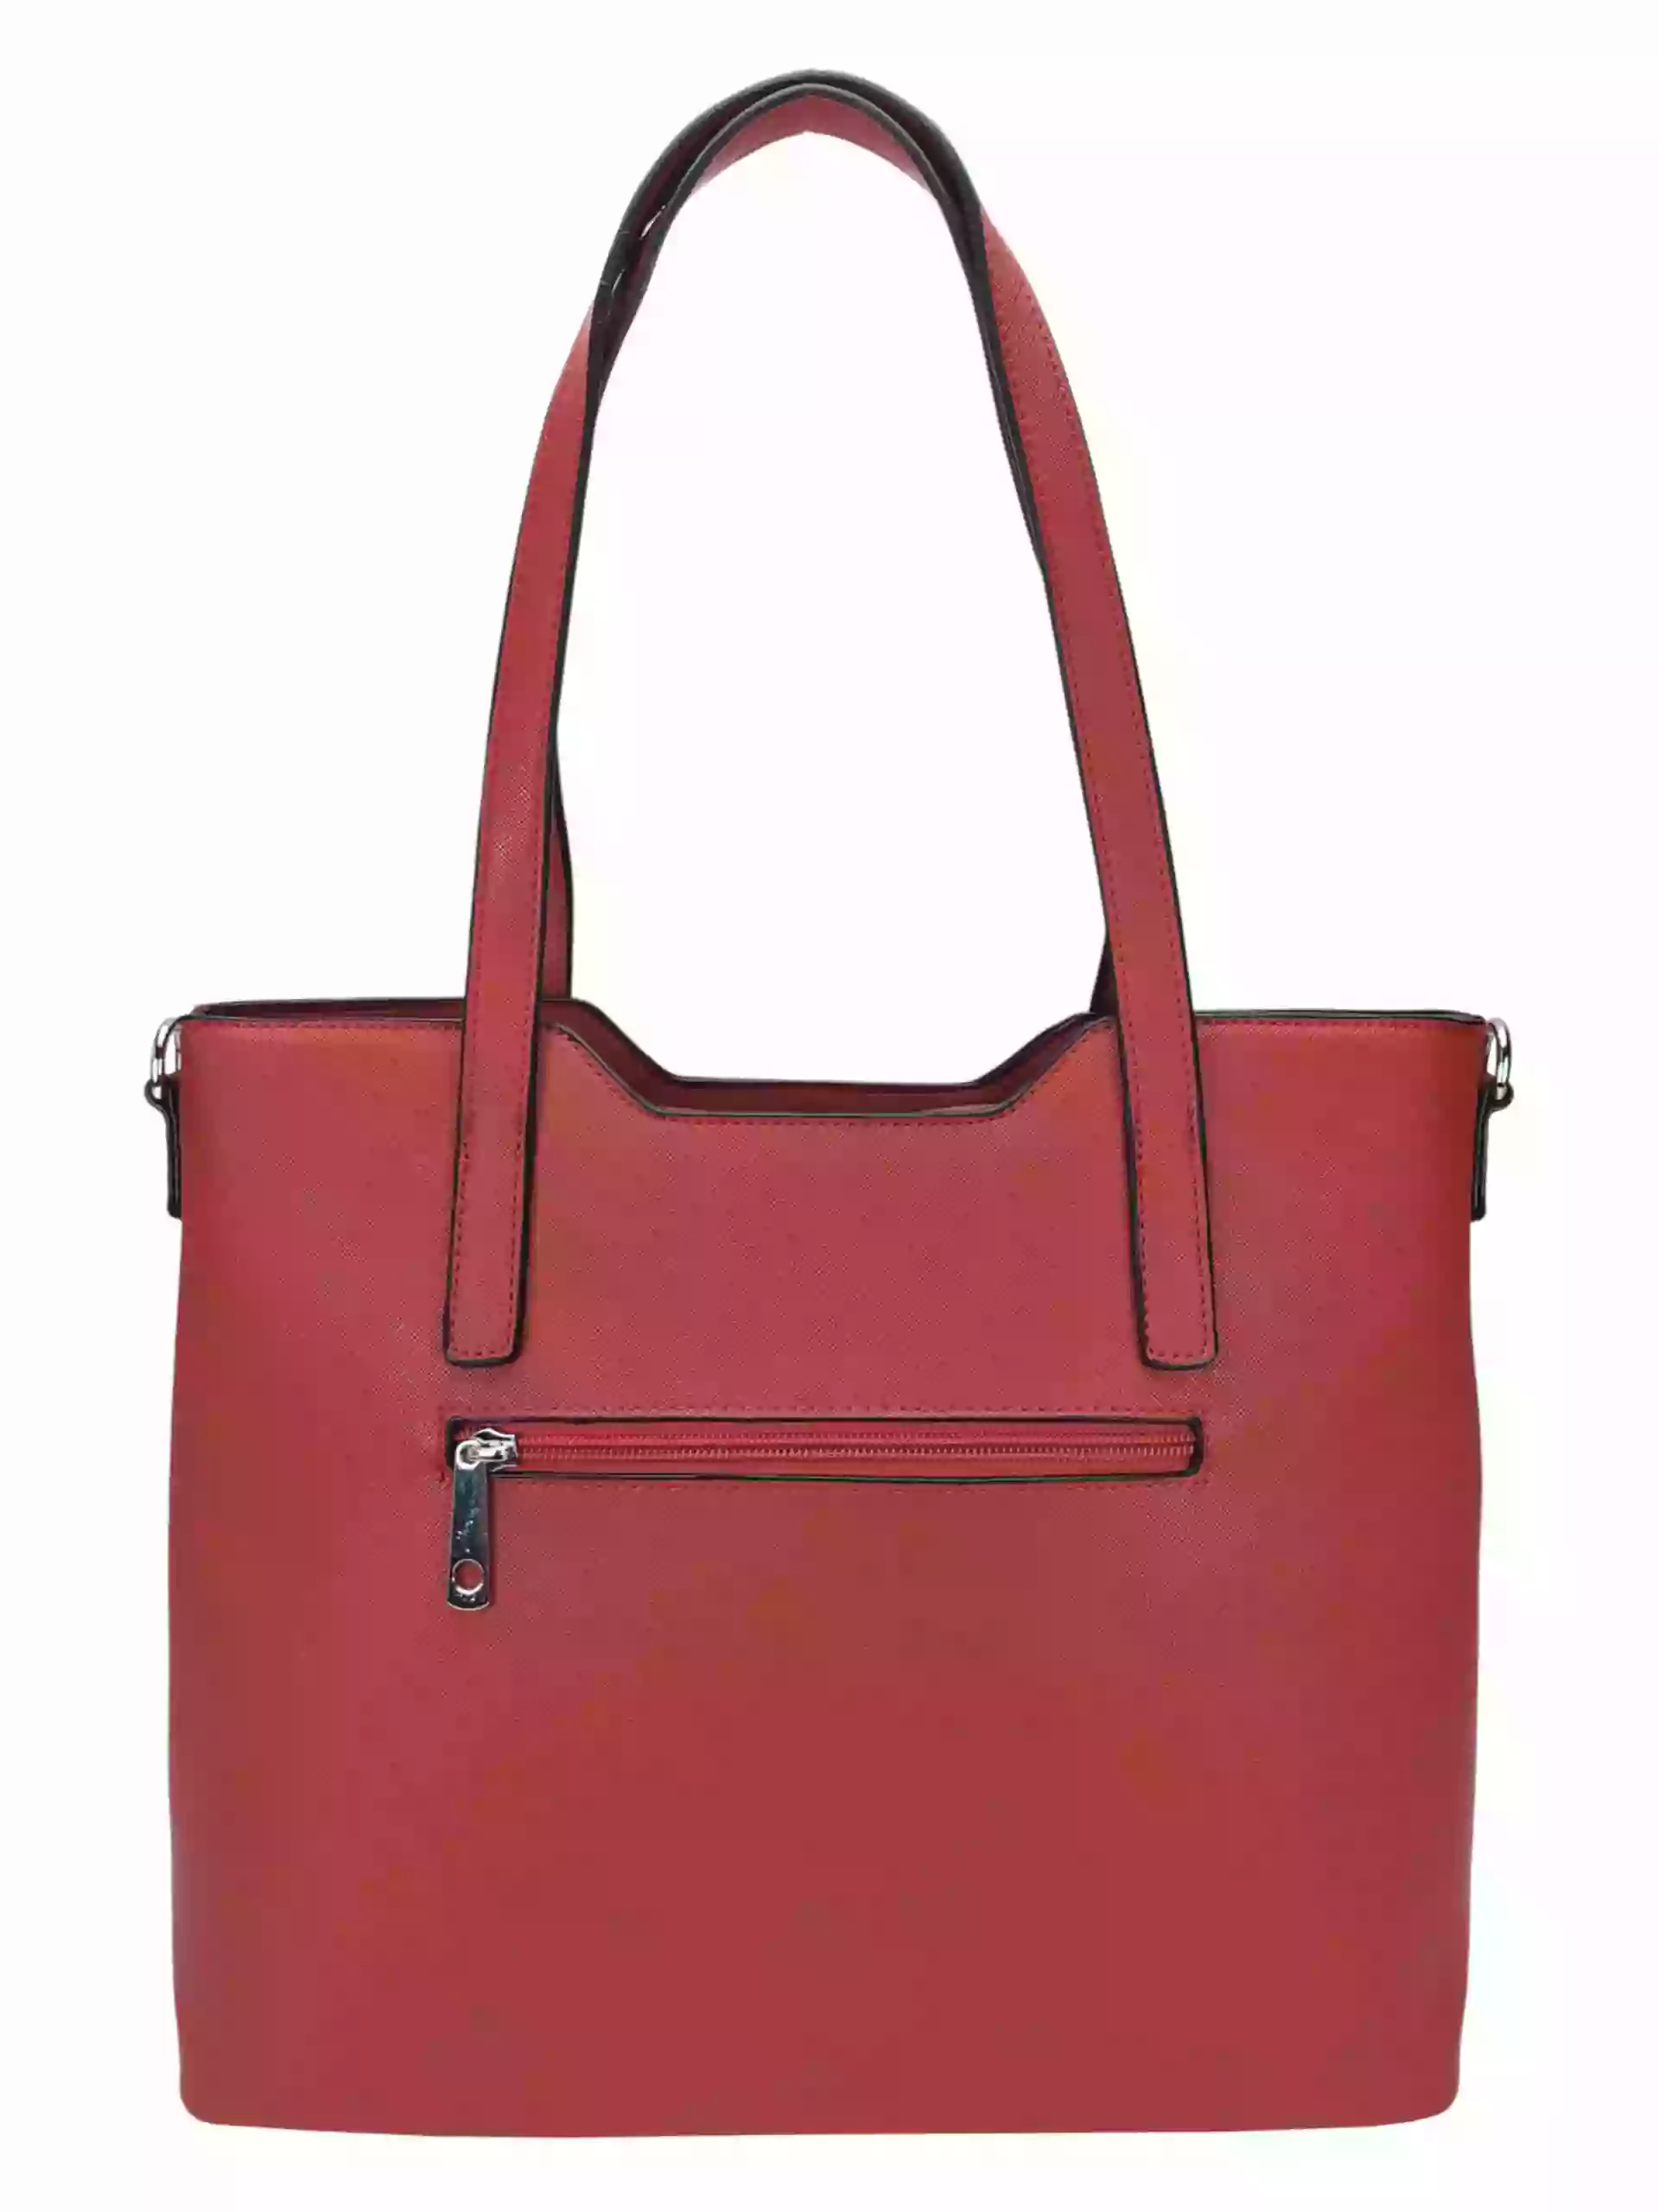 Tmavě červená kabelka do ruky se stříbrnými detaily, Tapple, H20801, zadní strana kabelky do ruky